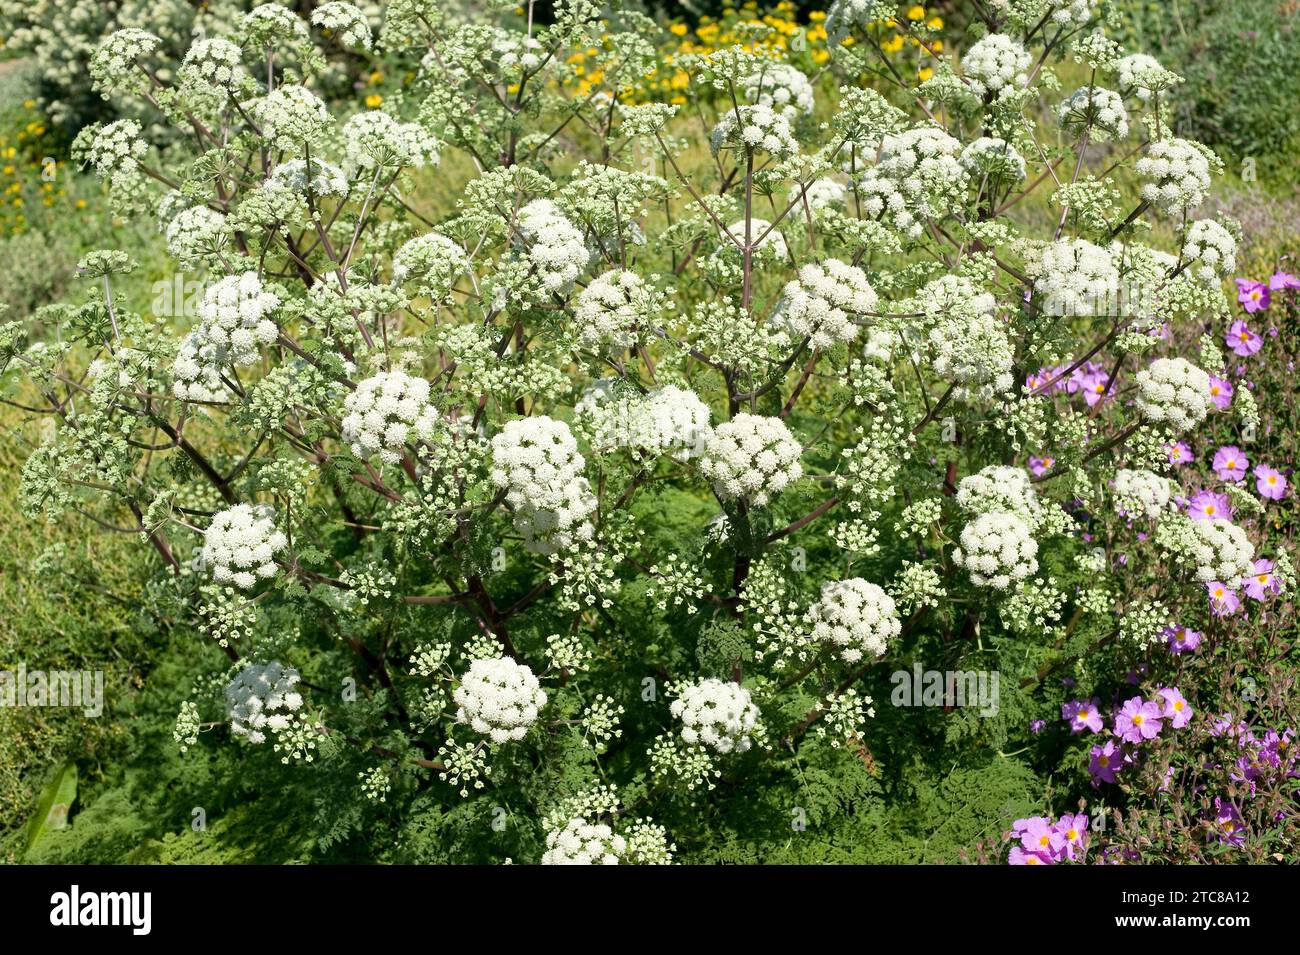 Athamanta sicula or Tinguarra sicula is a medicinal perennial herb native to Europe. Stock Photo